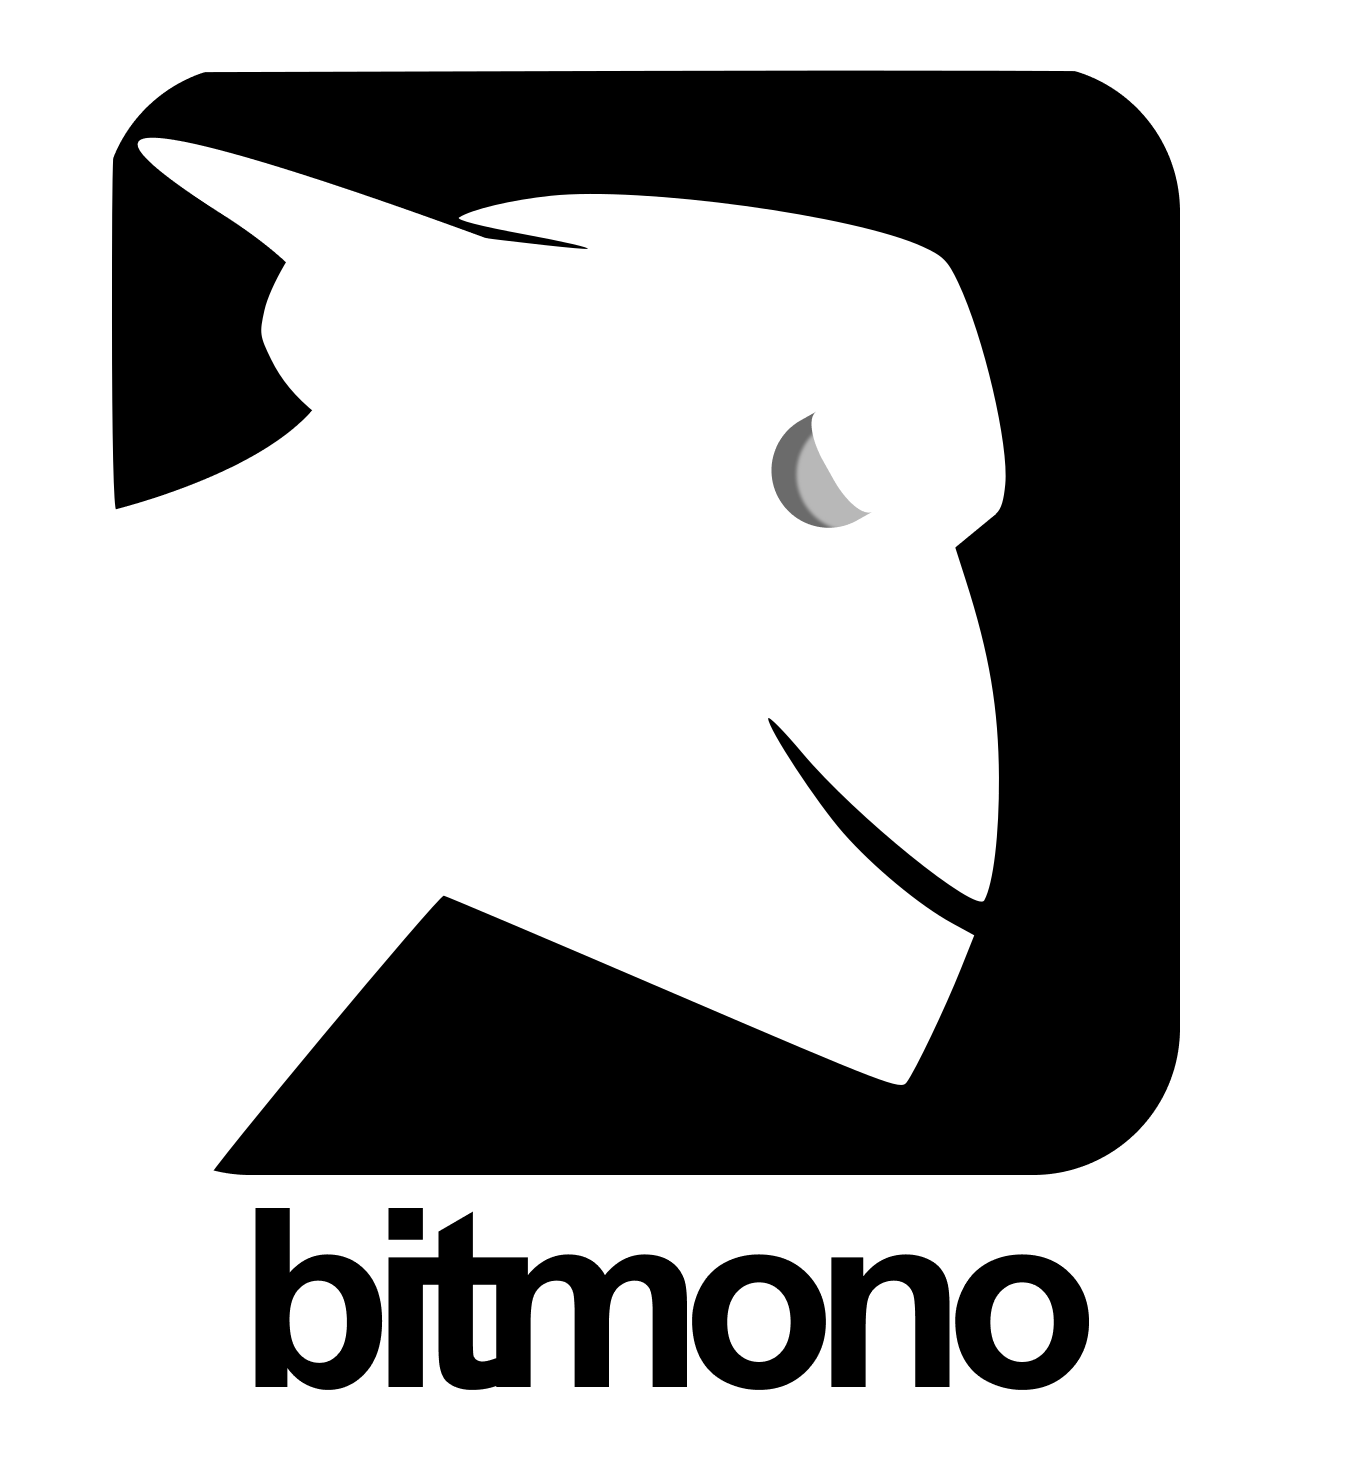 BitMono logo